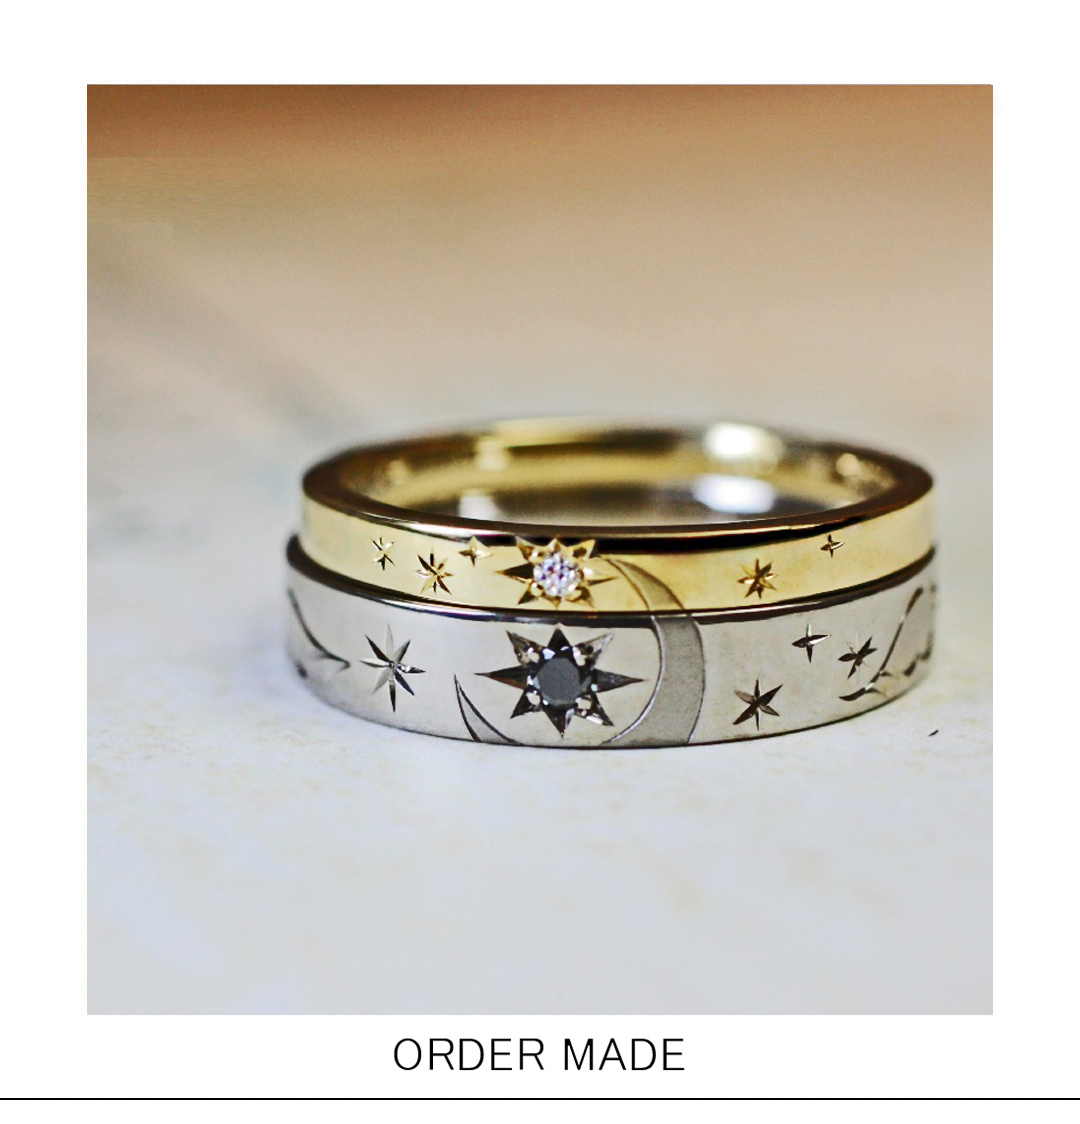 2本重ねて 月と星 をつくる ゴールド の結婚指輪オーダー作品 千葉 柏で結婚指輪をオーダーメイドするならヨーアンドマーレ